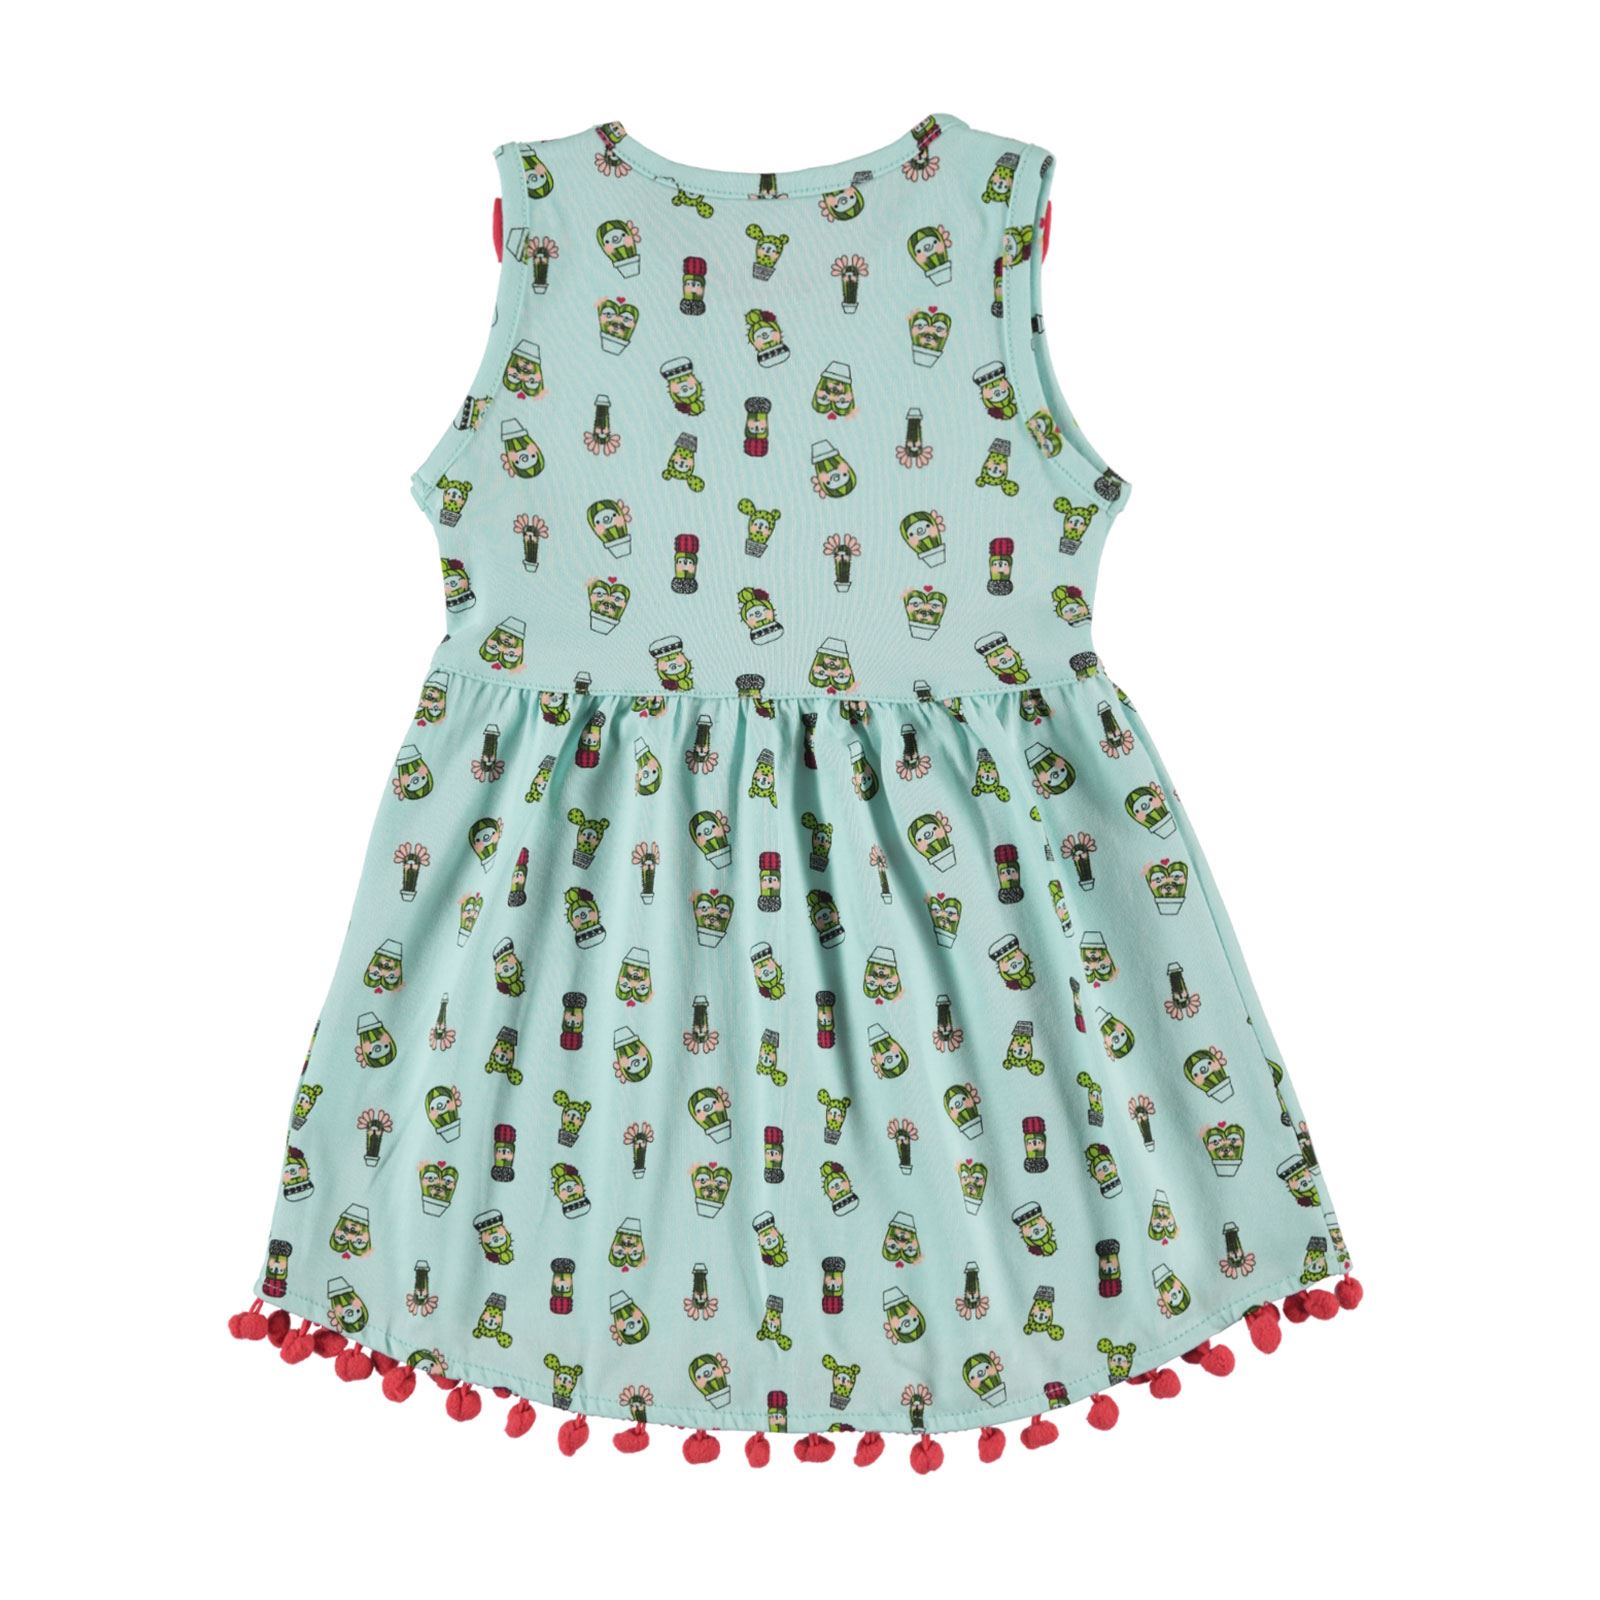 Kujju Kız Bebek Elbise 6-18 Ay Mint Yeşili